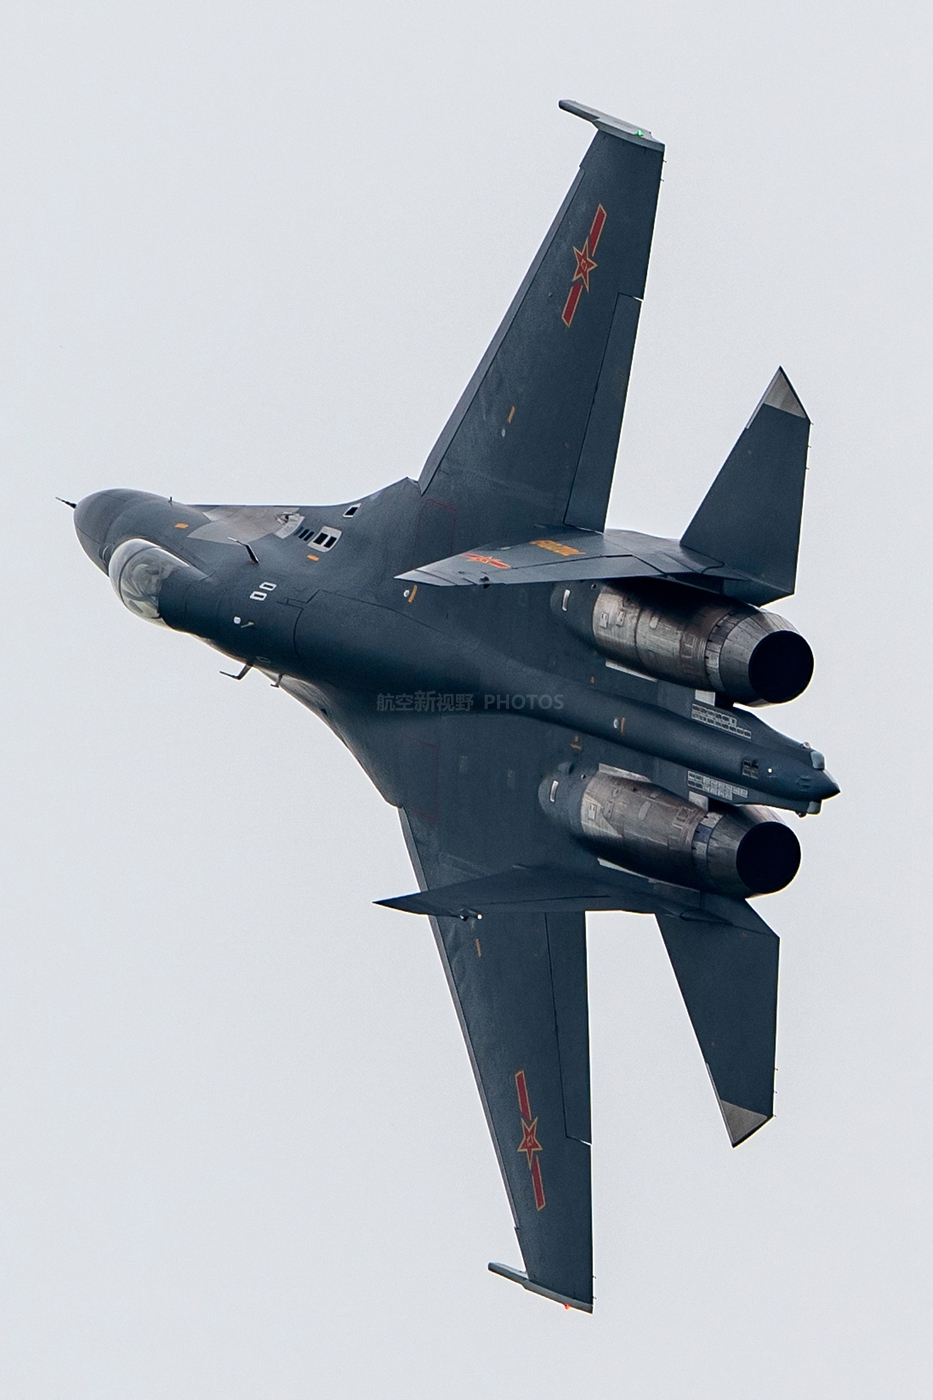 中国空军歼11bs双座重型战斗机空军航空开放活动的明星战机